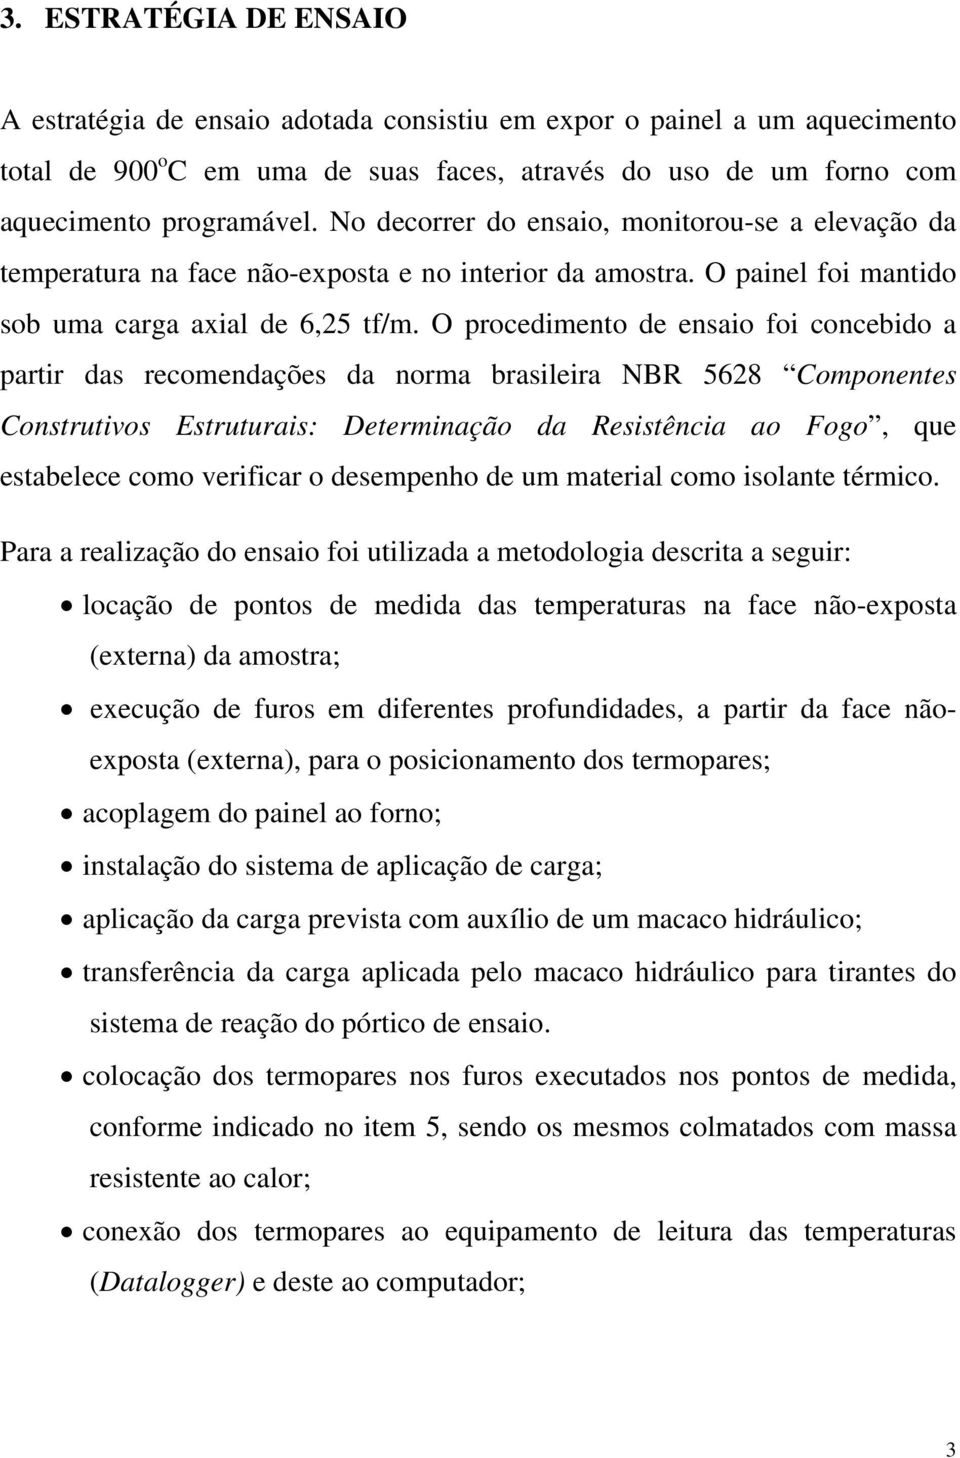 O procedimento de ensaio foi concebido a partir das recomendações da norma brasileira NBR 5628 Componentes Construtivos Estruturais: Determinação da Resistência ao Fogo, que estabelece como verificar